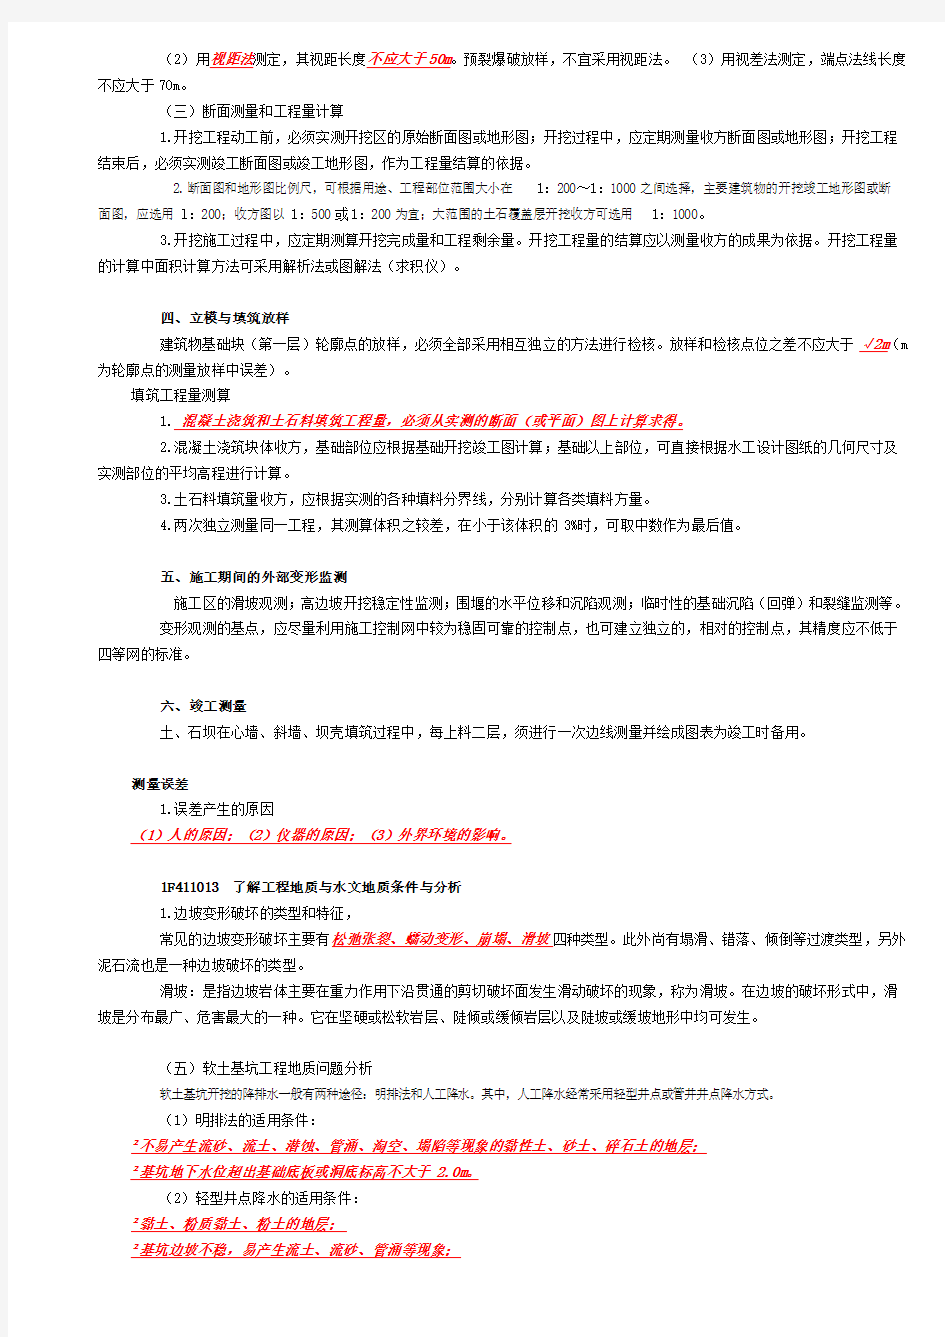 水利水电实务讲义整理(刘永强)P1-143[1]